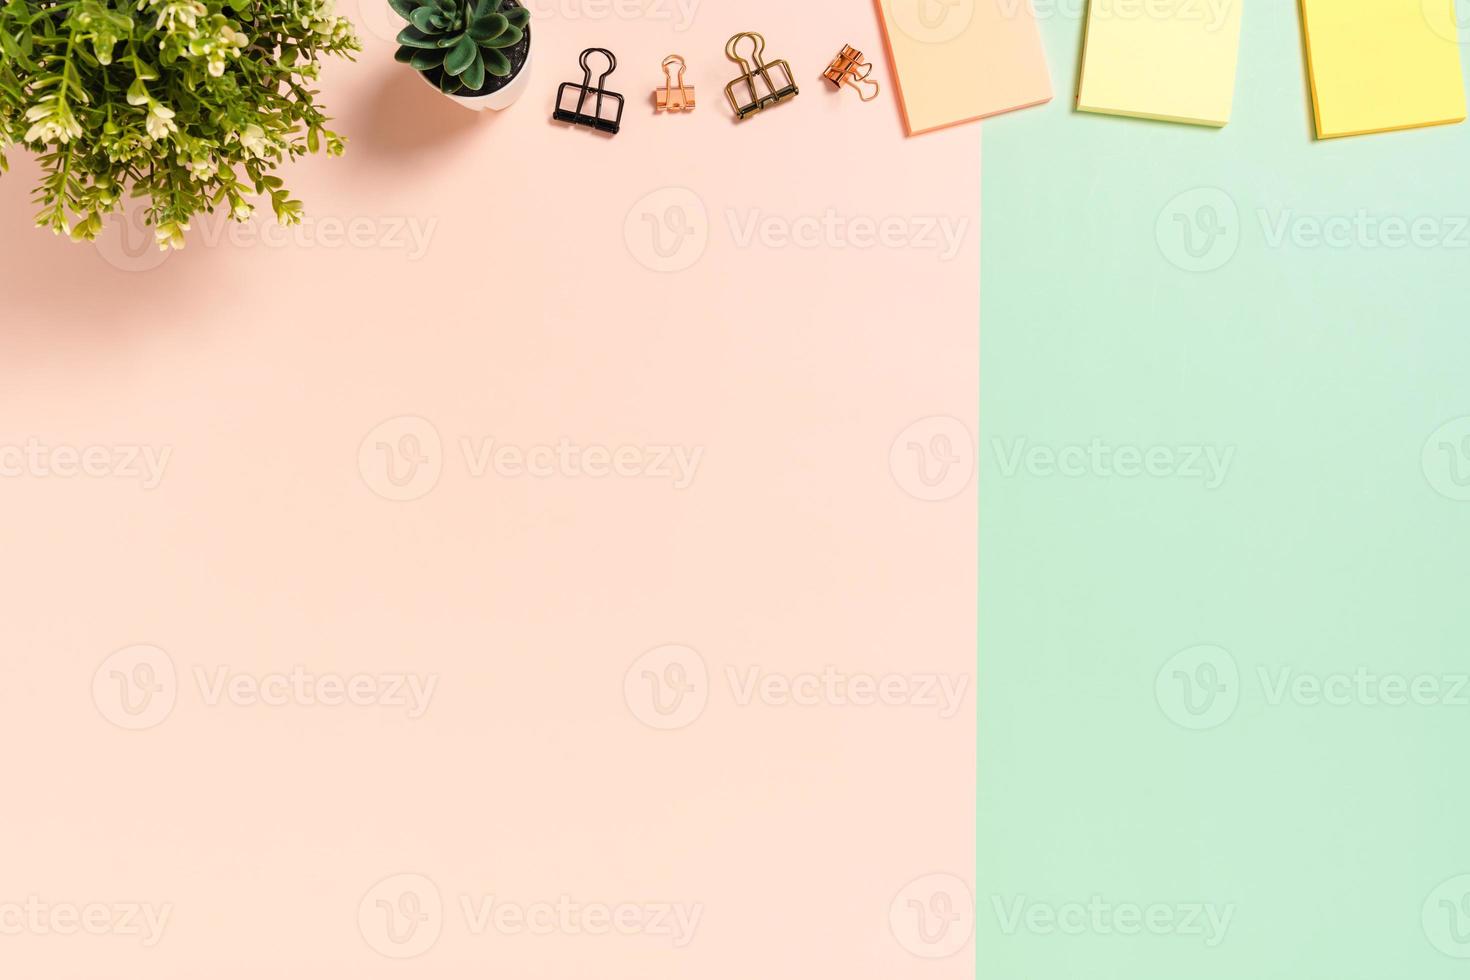 spazio di lavoro minimo - foto creativa piatta della scrivania dell'area di lavoro. scrivania da ufficio vista dall'alto con nota adesiva su sfondo di colore rosa verde pastello. vista dall'alto con spazio di copia, fotografia piatta.